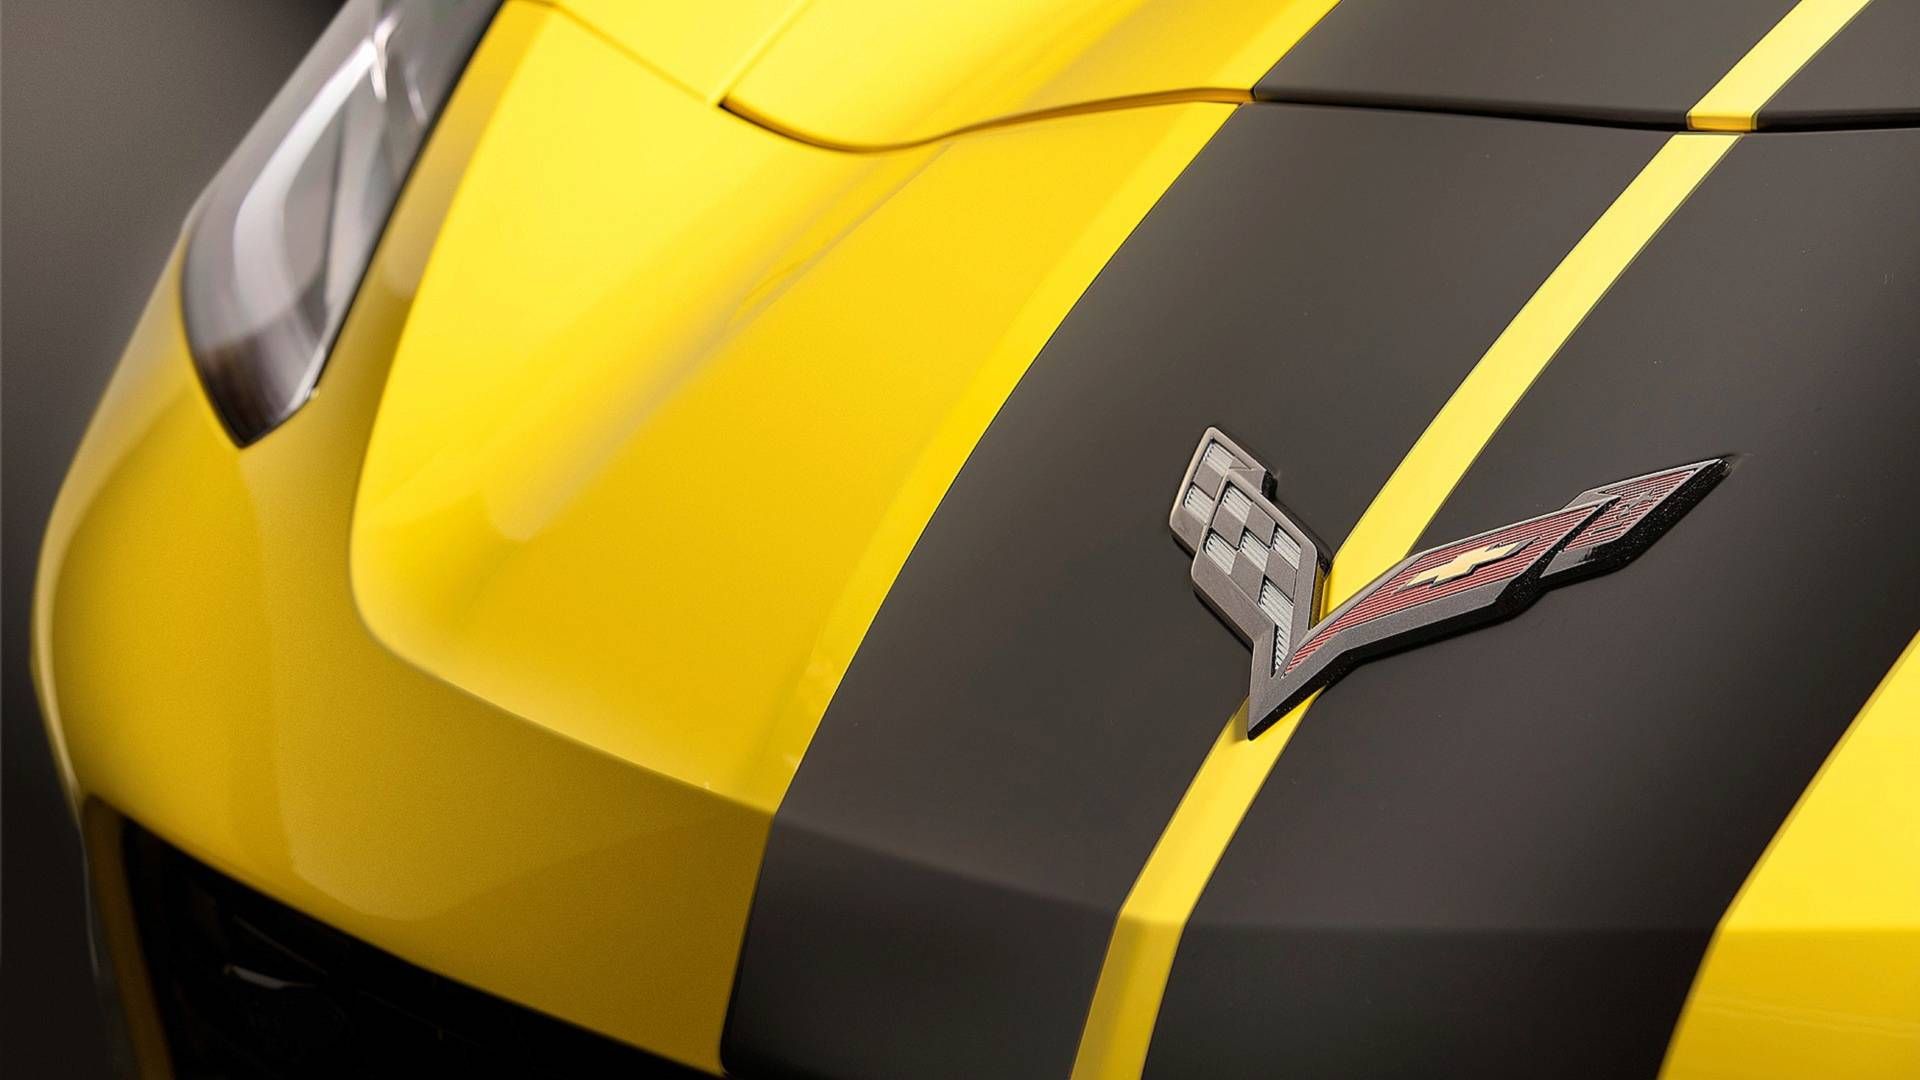 Hertz Corvette Z06 Offers Insane Power